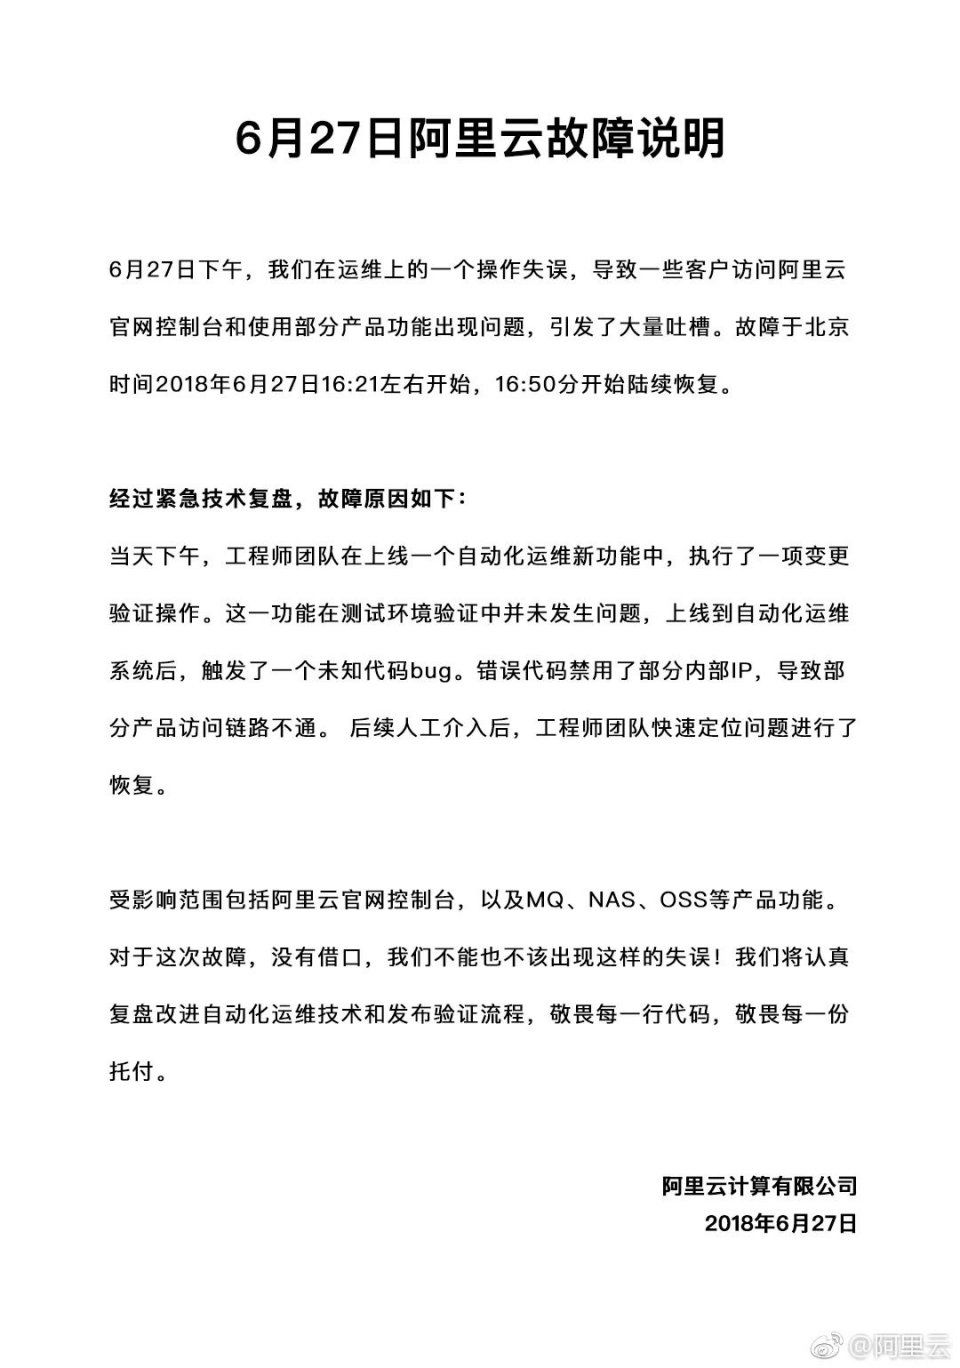 易考拉起诉中国消费者协会;百度前员工违约加